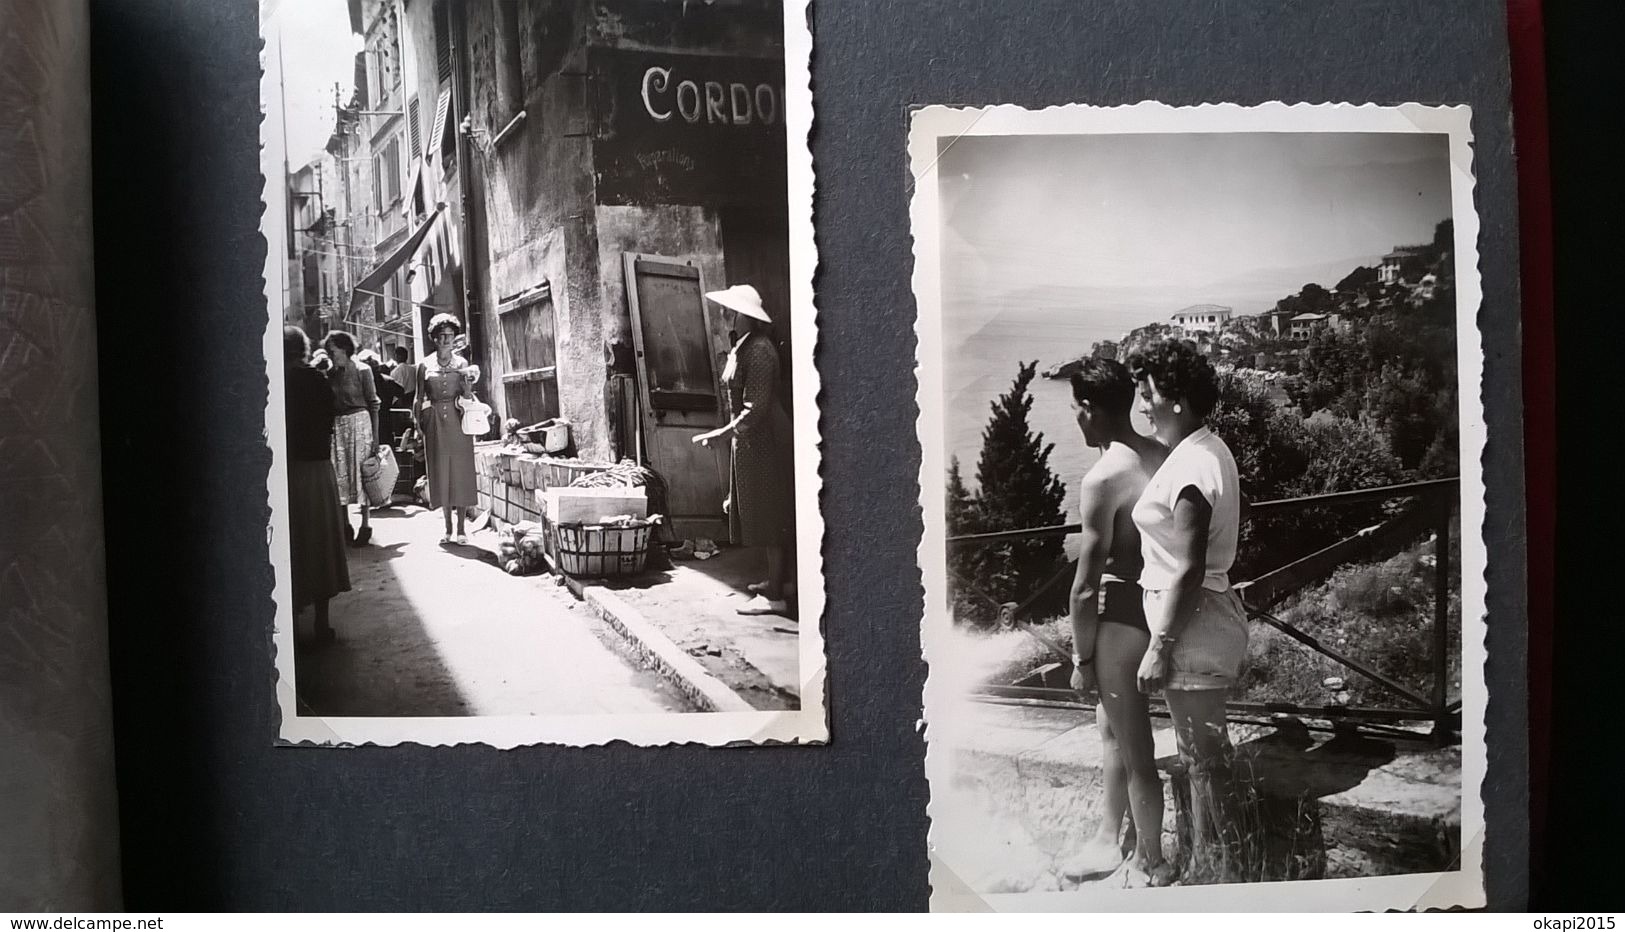 23 PHOTOS DE VOYAGE D UN COUPLE CÔTE D AZUR NICE CANNES MENTON MONACO  lieux communs Années 1950